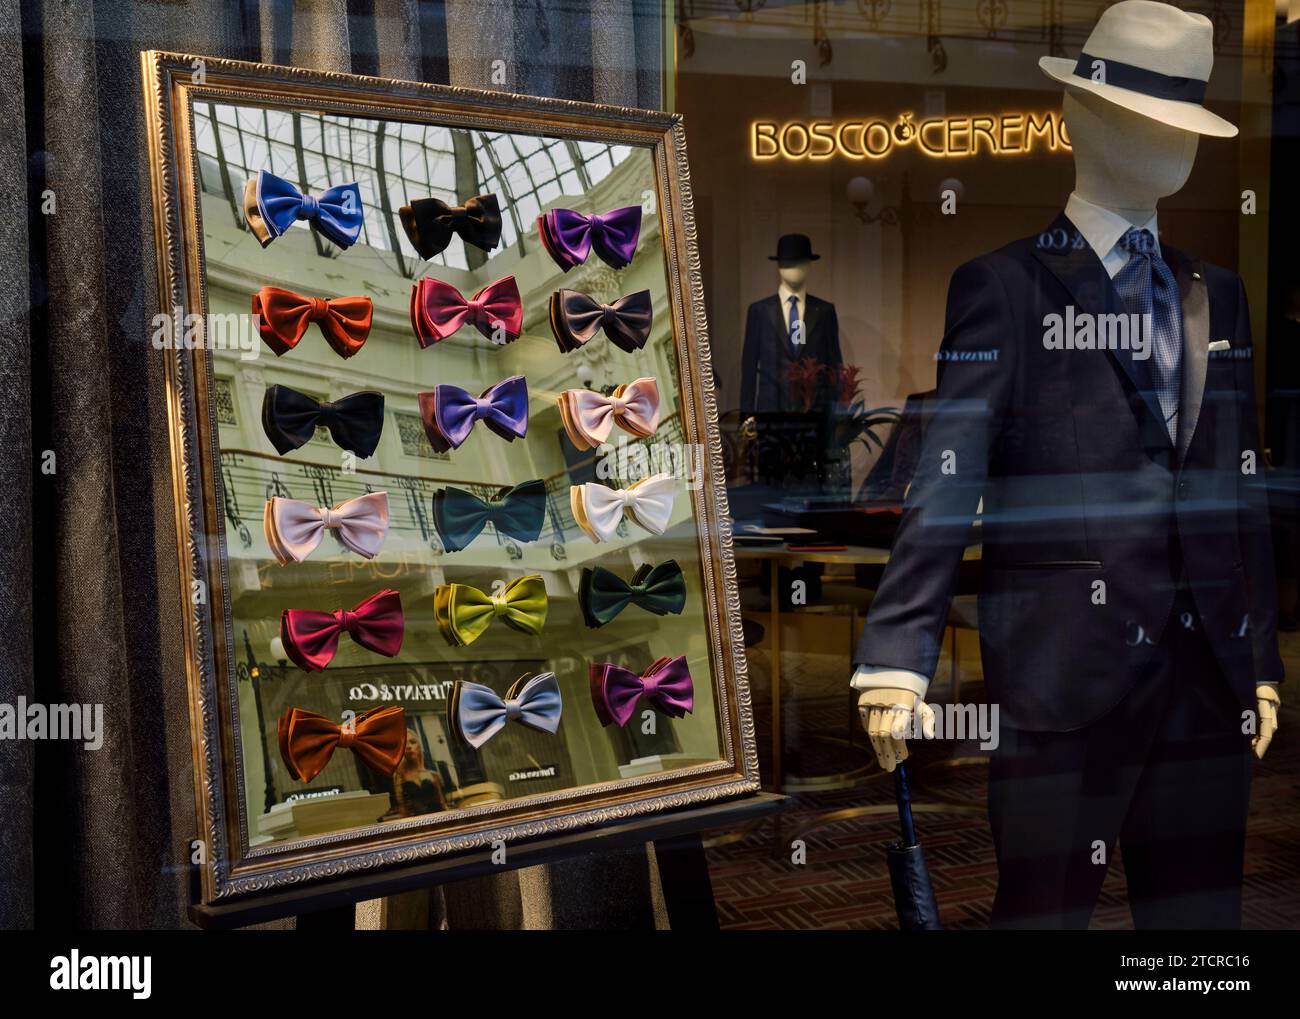 Collection colorée de noeuds papillon haut de gamme affichés dans la vitrine du passage Petrovsky, grand magasin de luxe. Moscou, Fédération de Russie. Banque D'Images